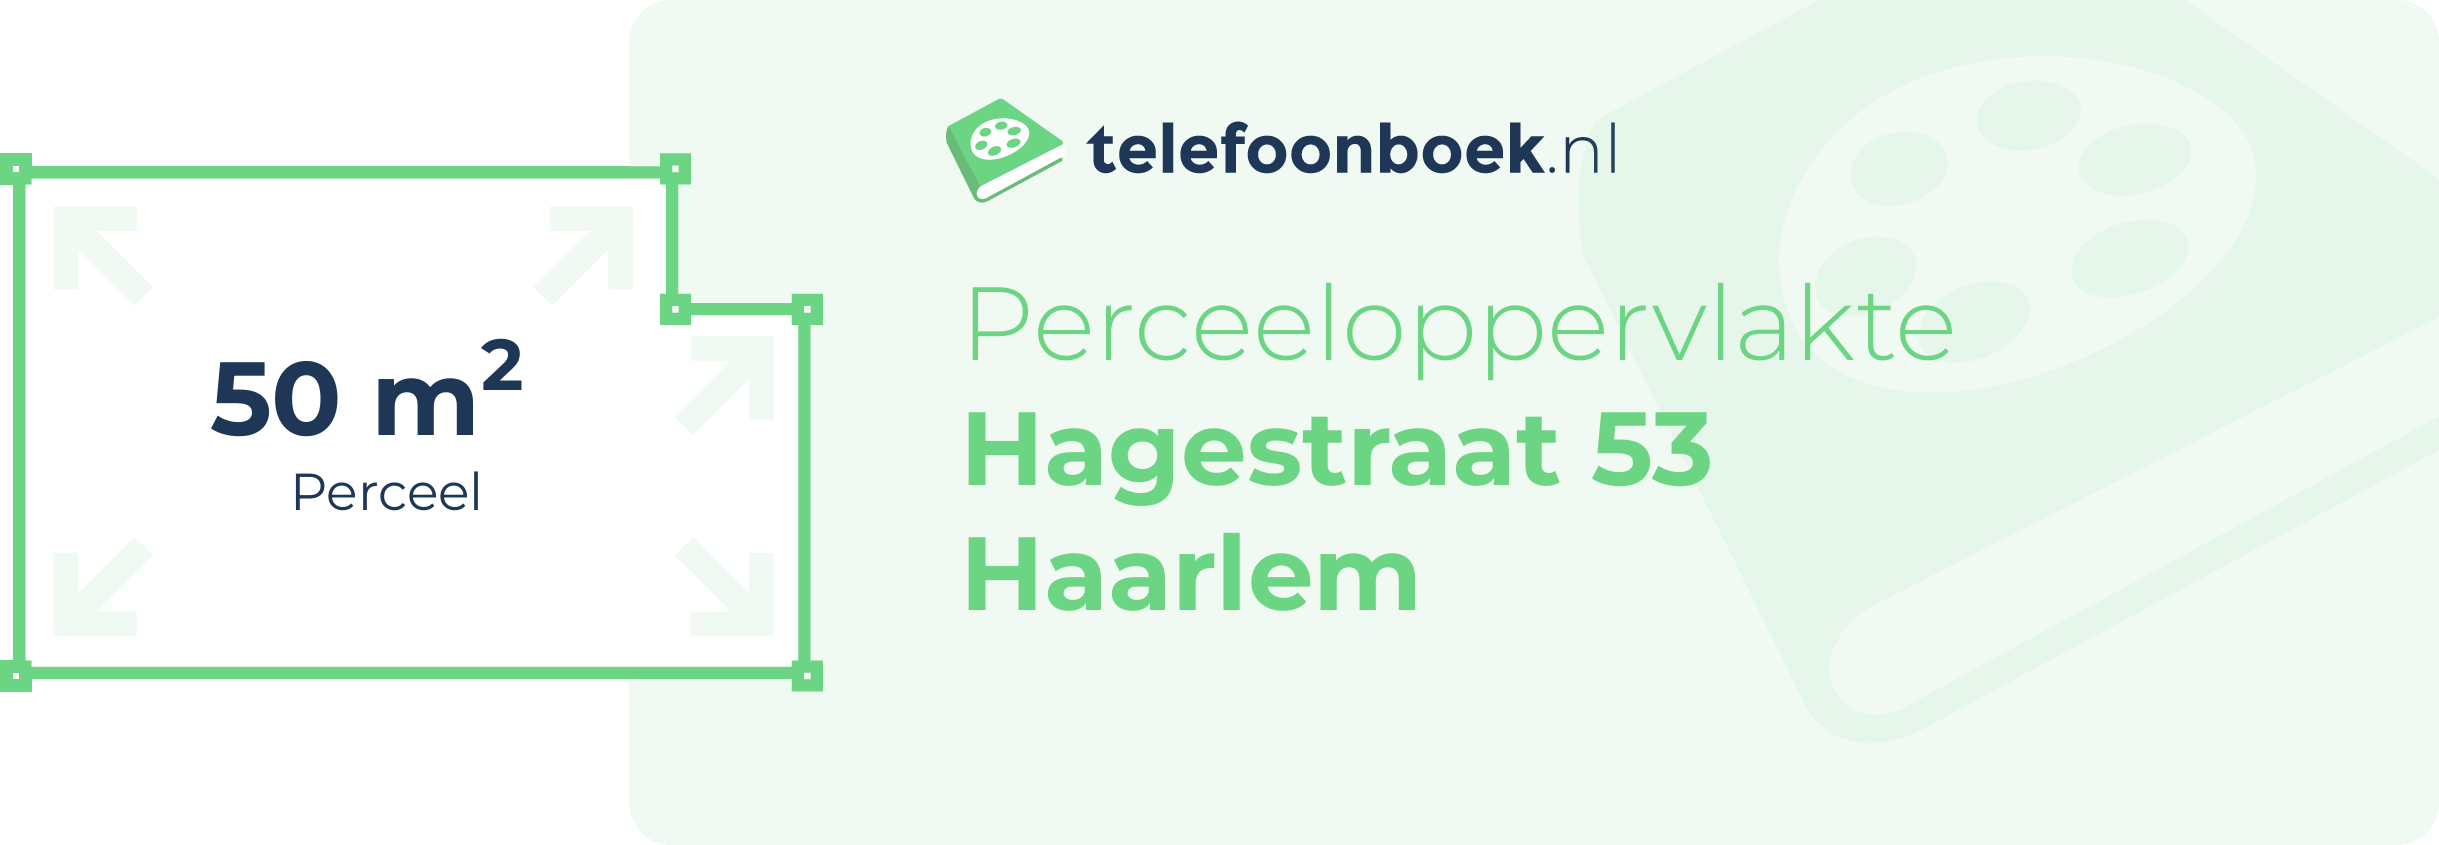 Perceeloppervlakte Hagestraat 53 Haarlem